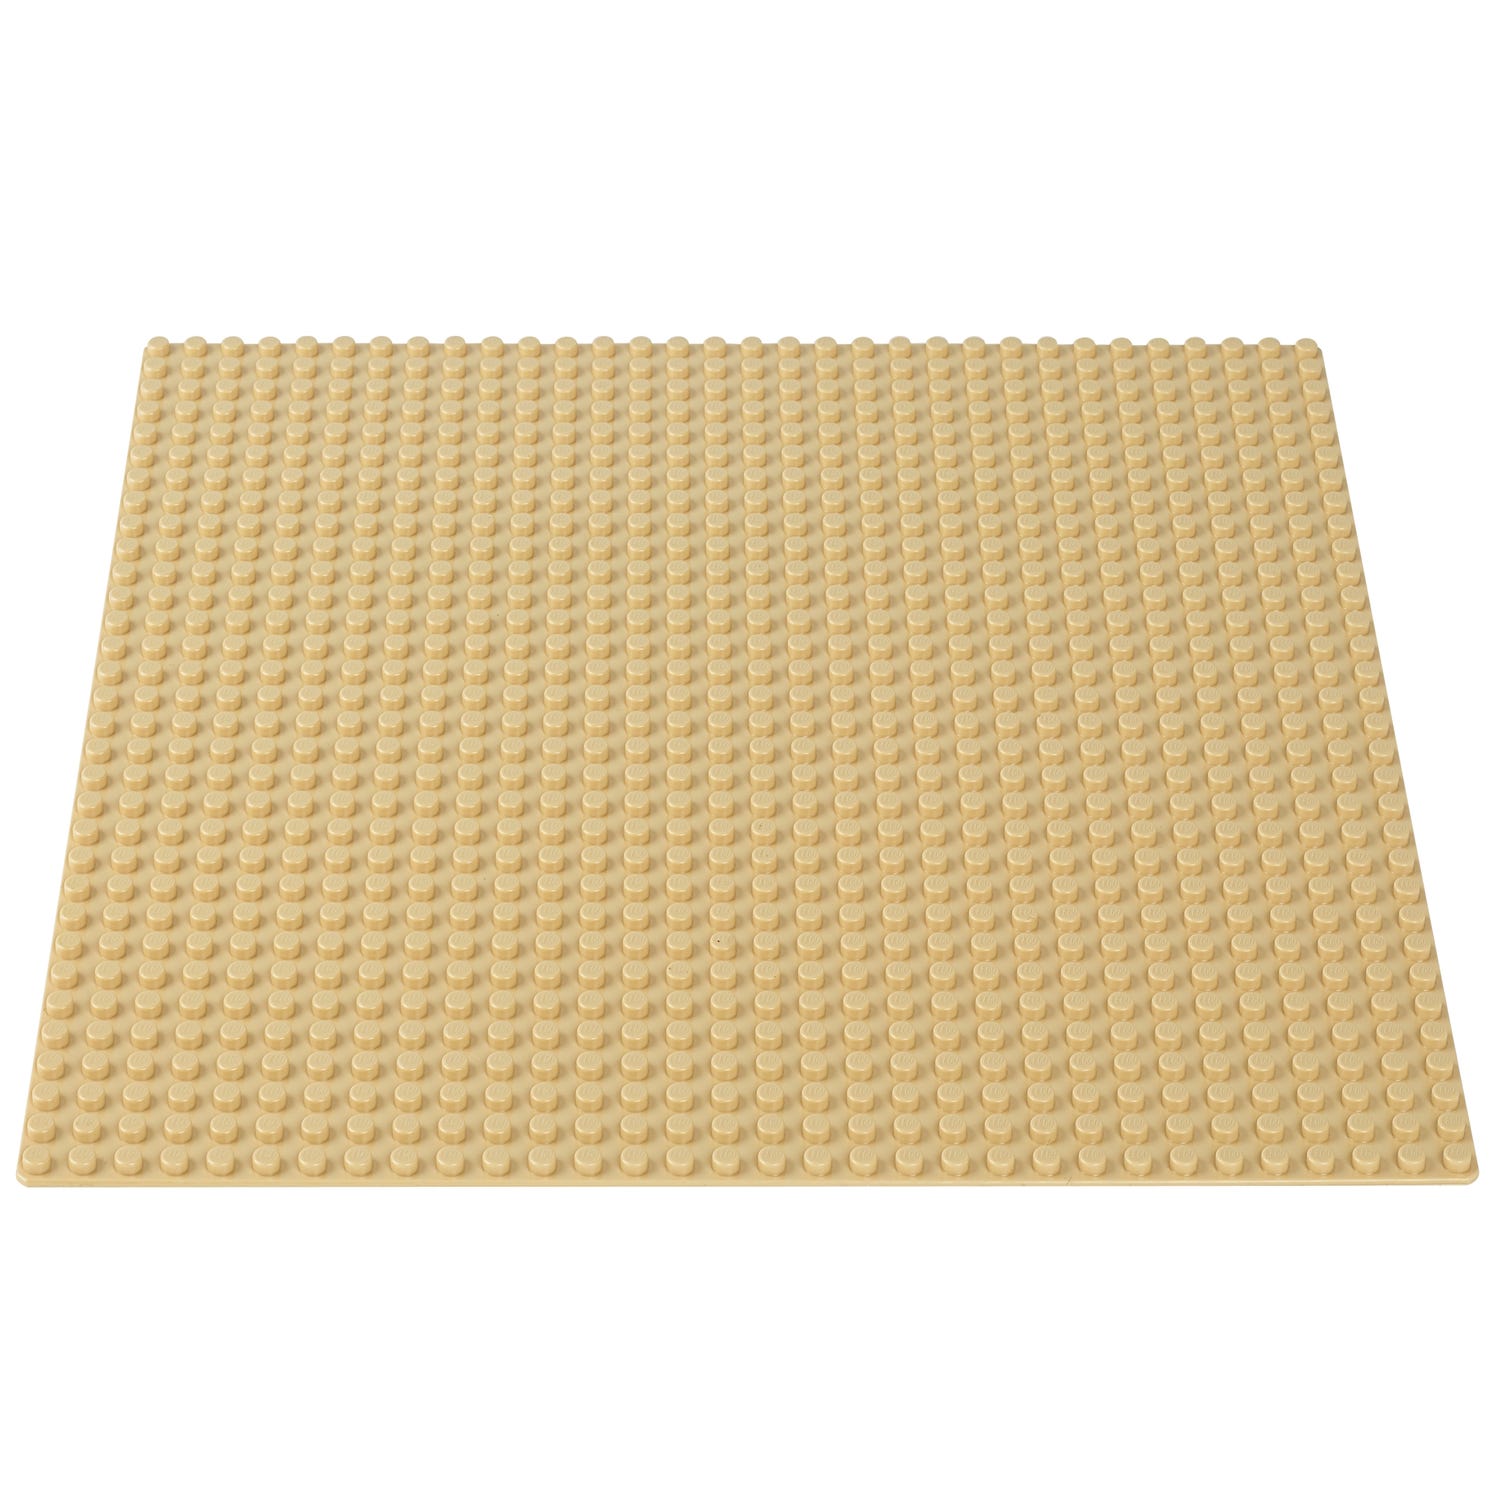 La plaque de base sable 10699 | Classic | Boutique LEGO® officielle FR